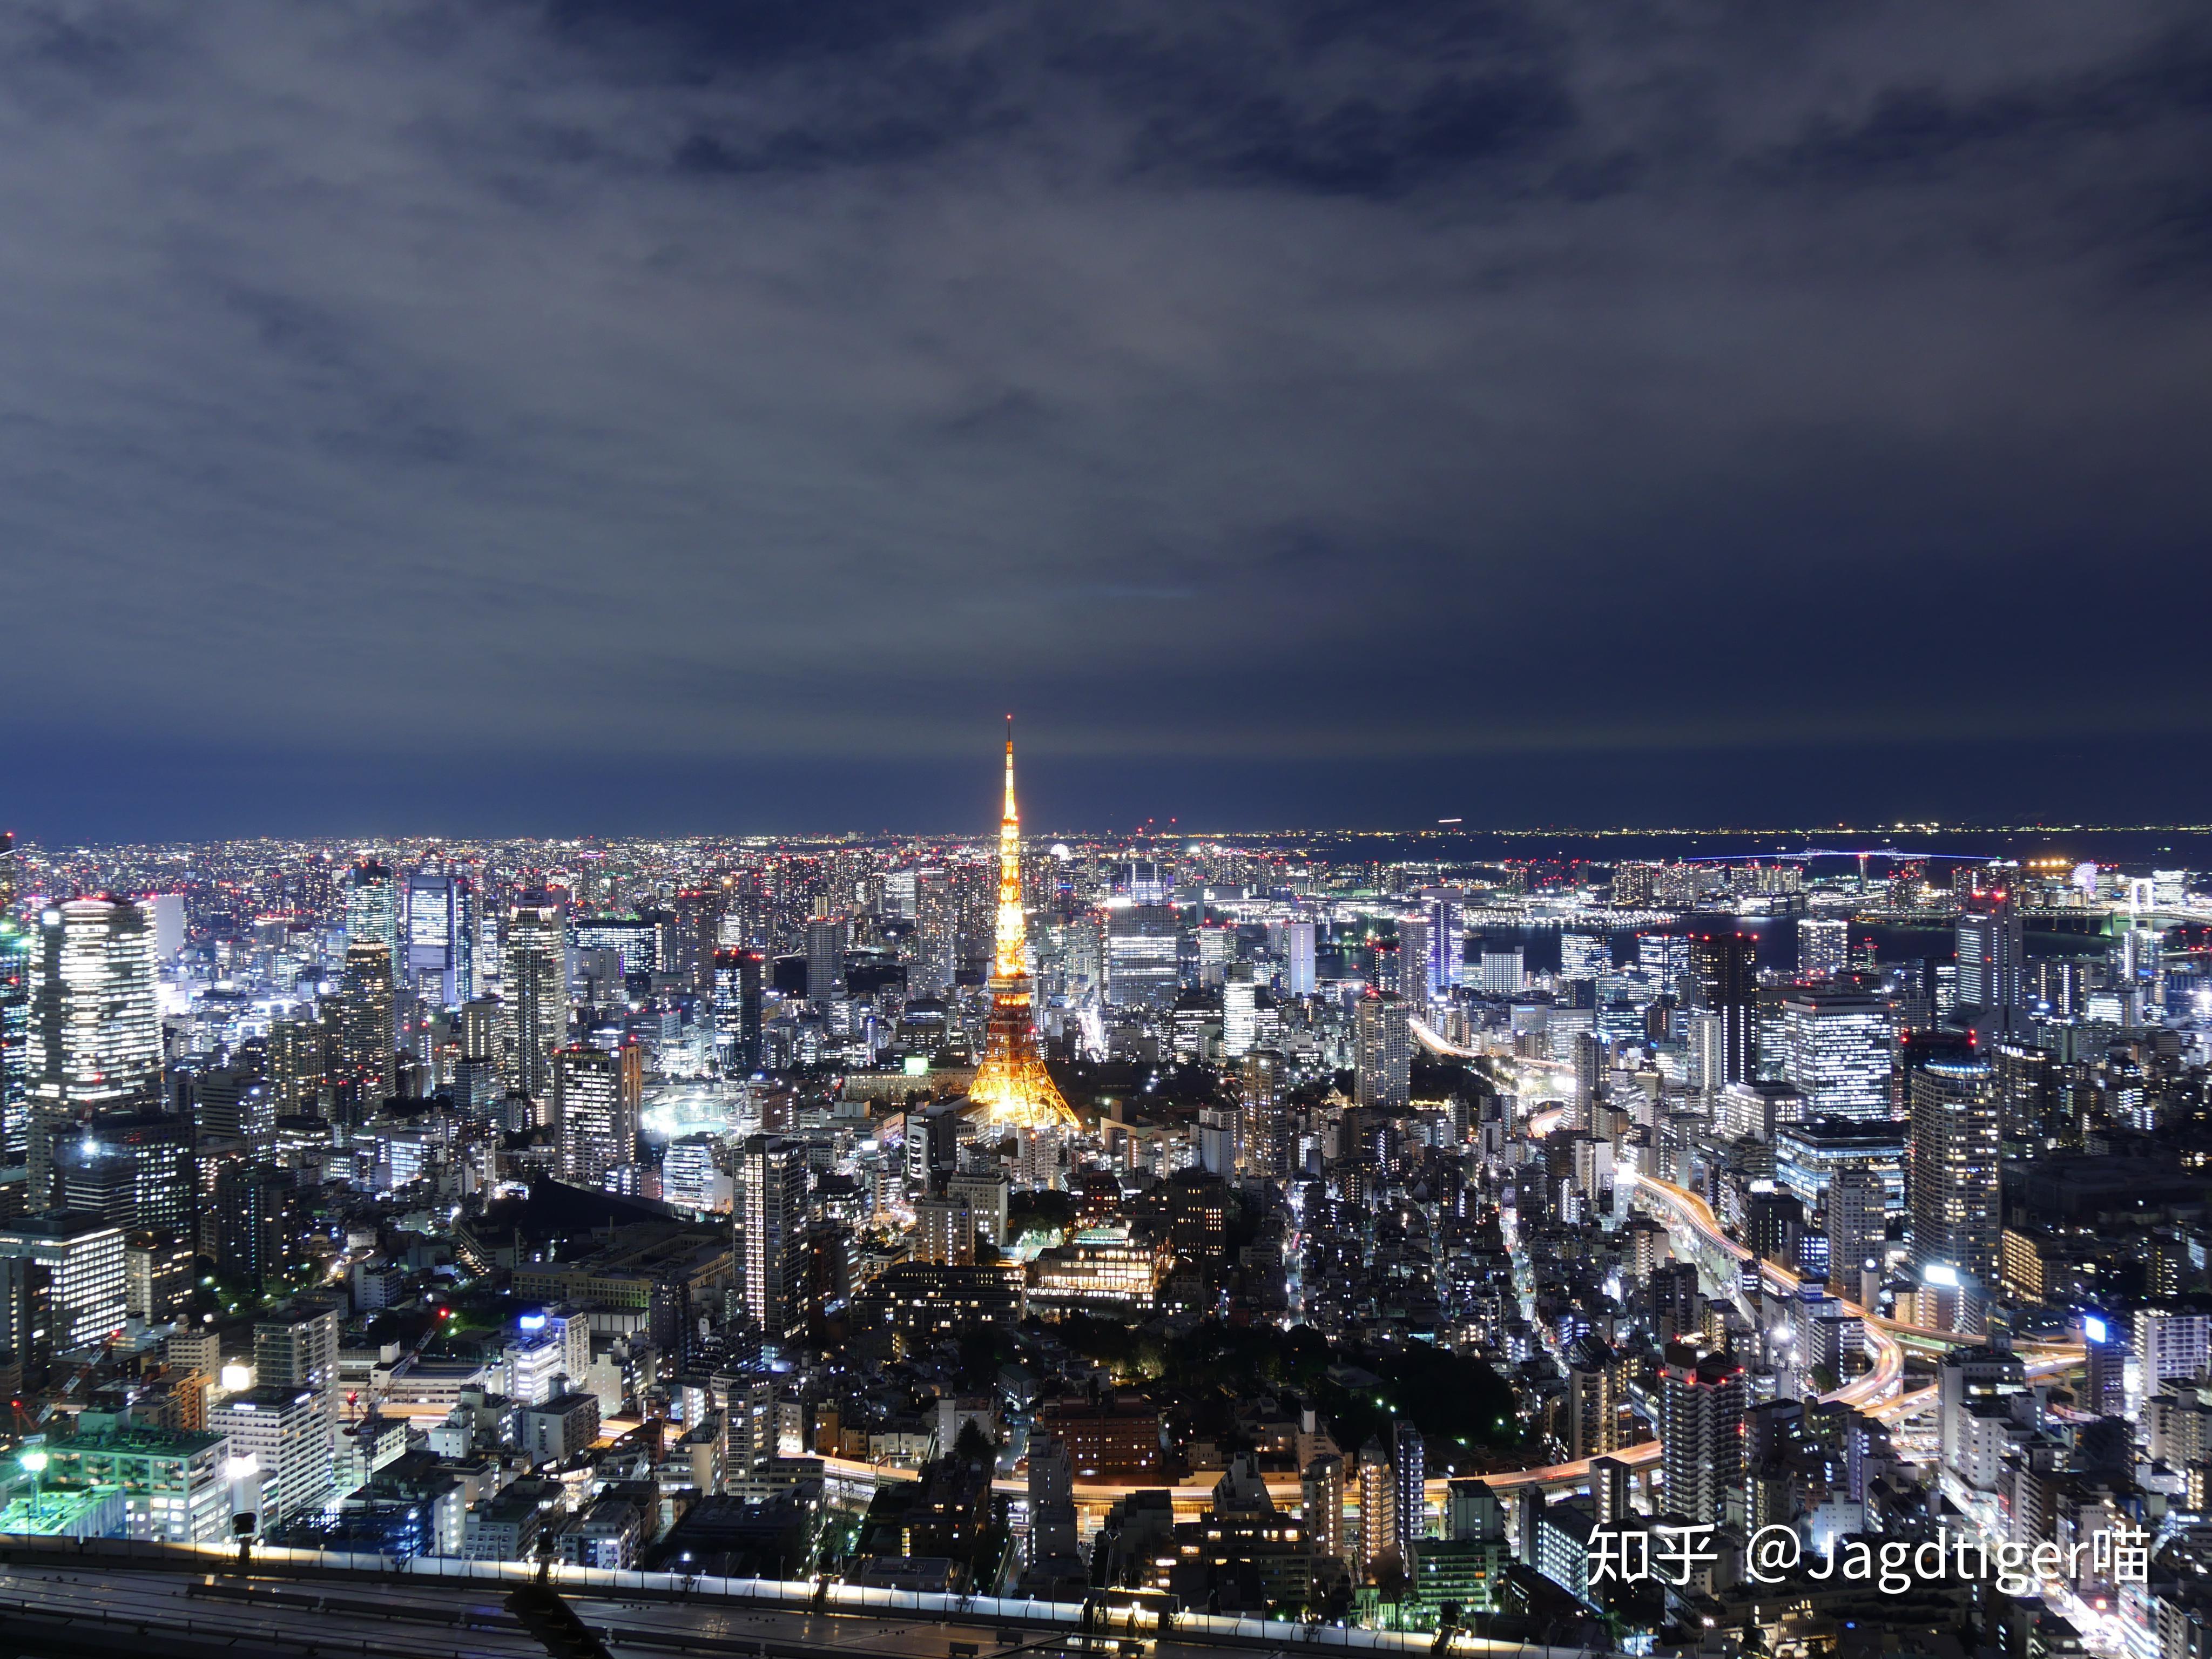 东京铁塔夜景桌面壁纸-壁纸图片大全